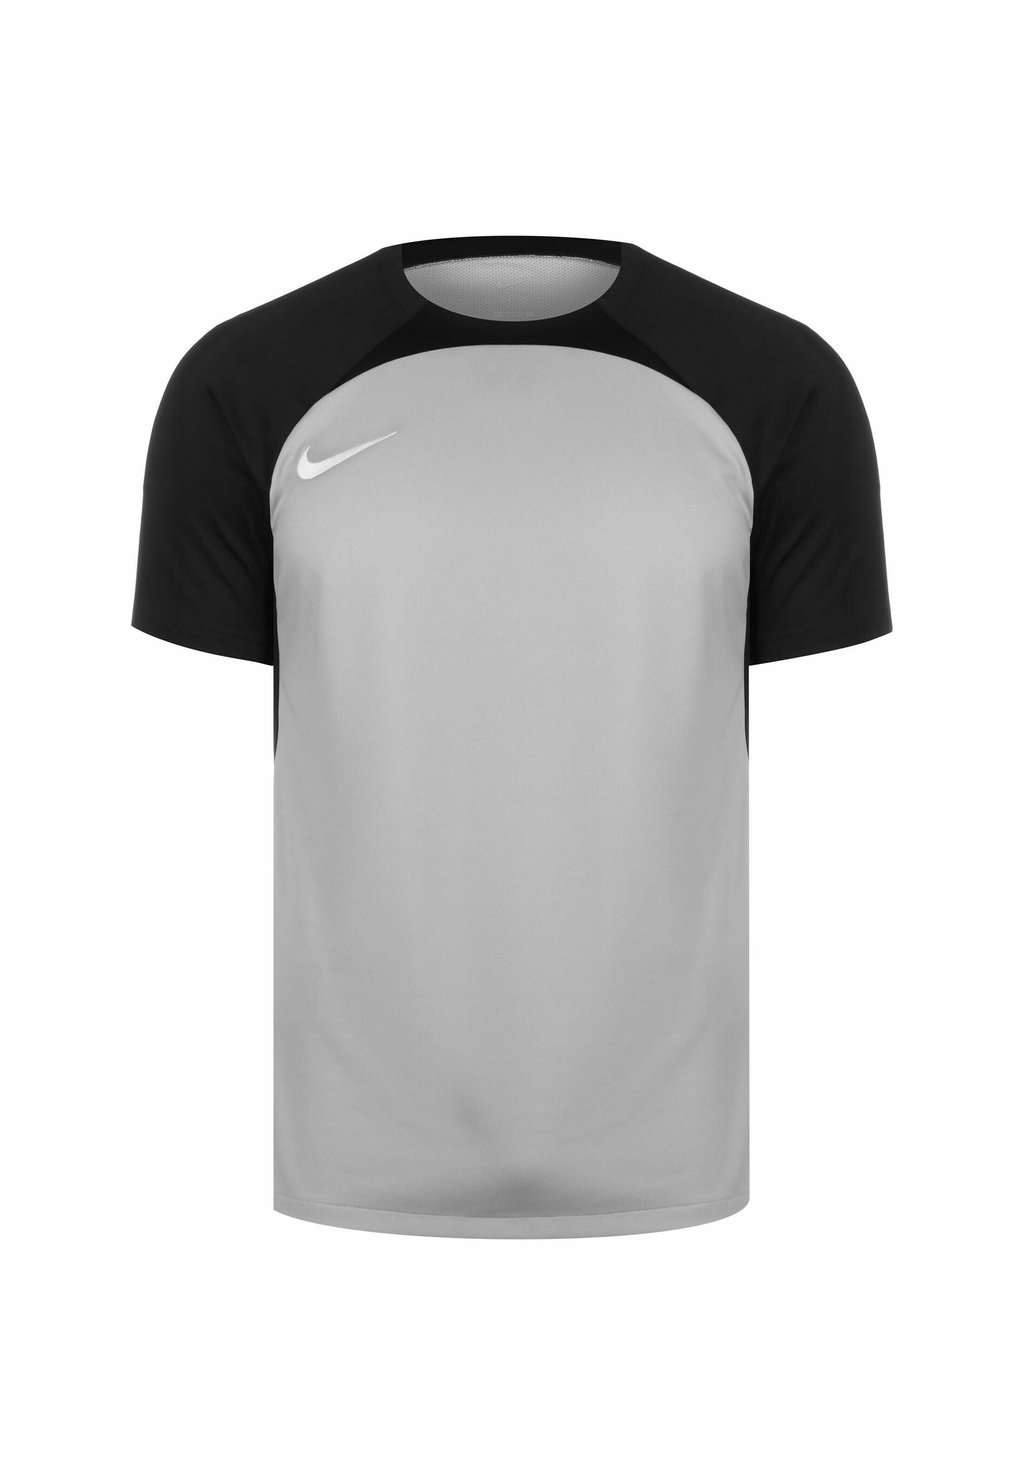 Спортивная футболка Strike Iii Fussball Nike, цвет pewter grey black white